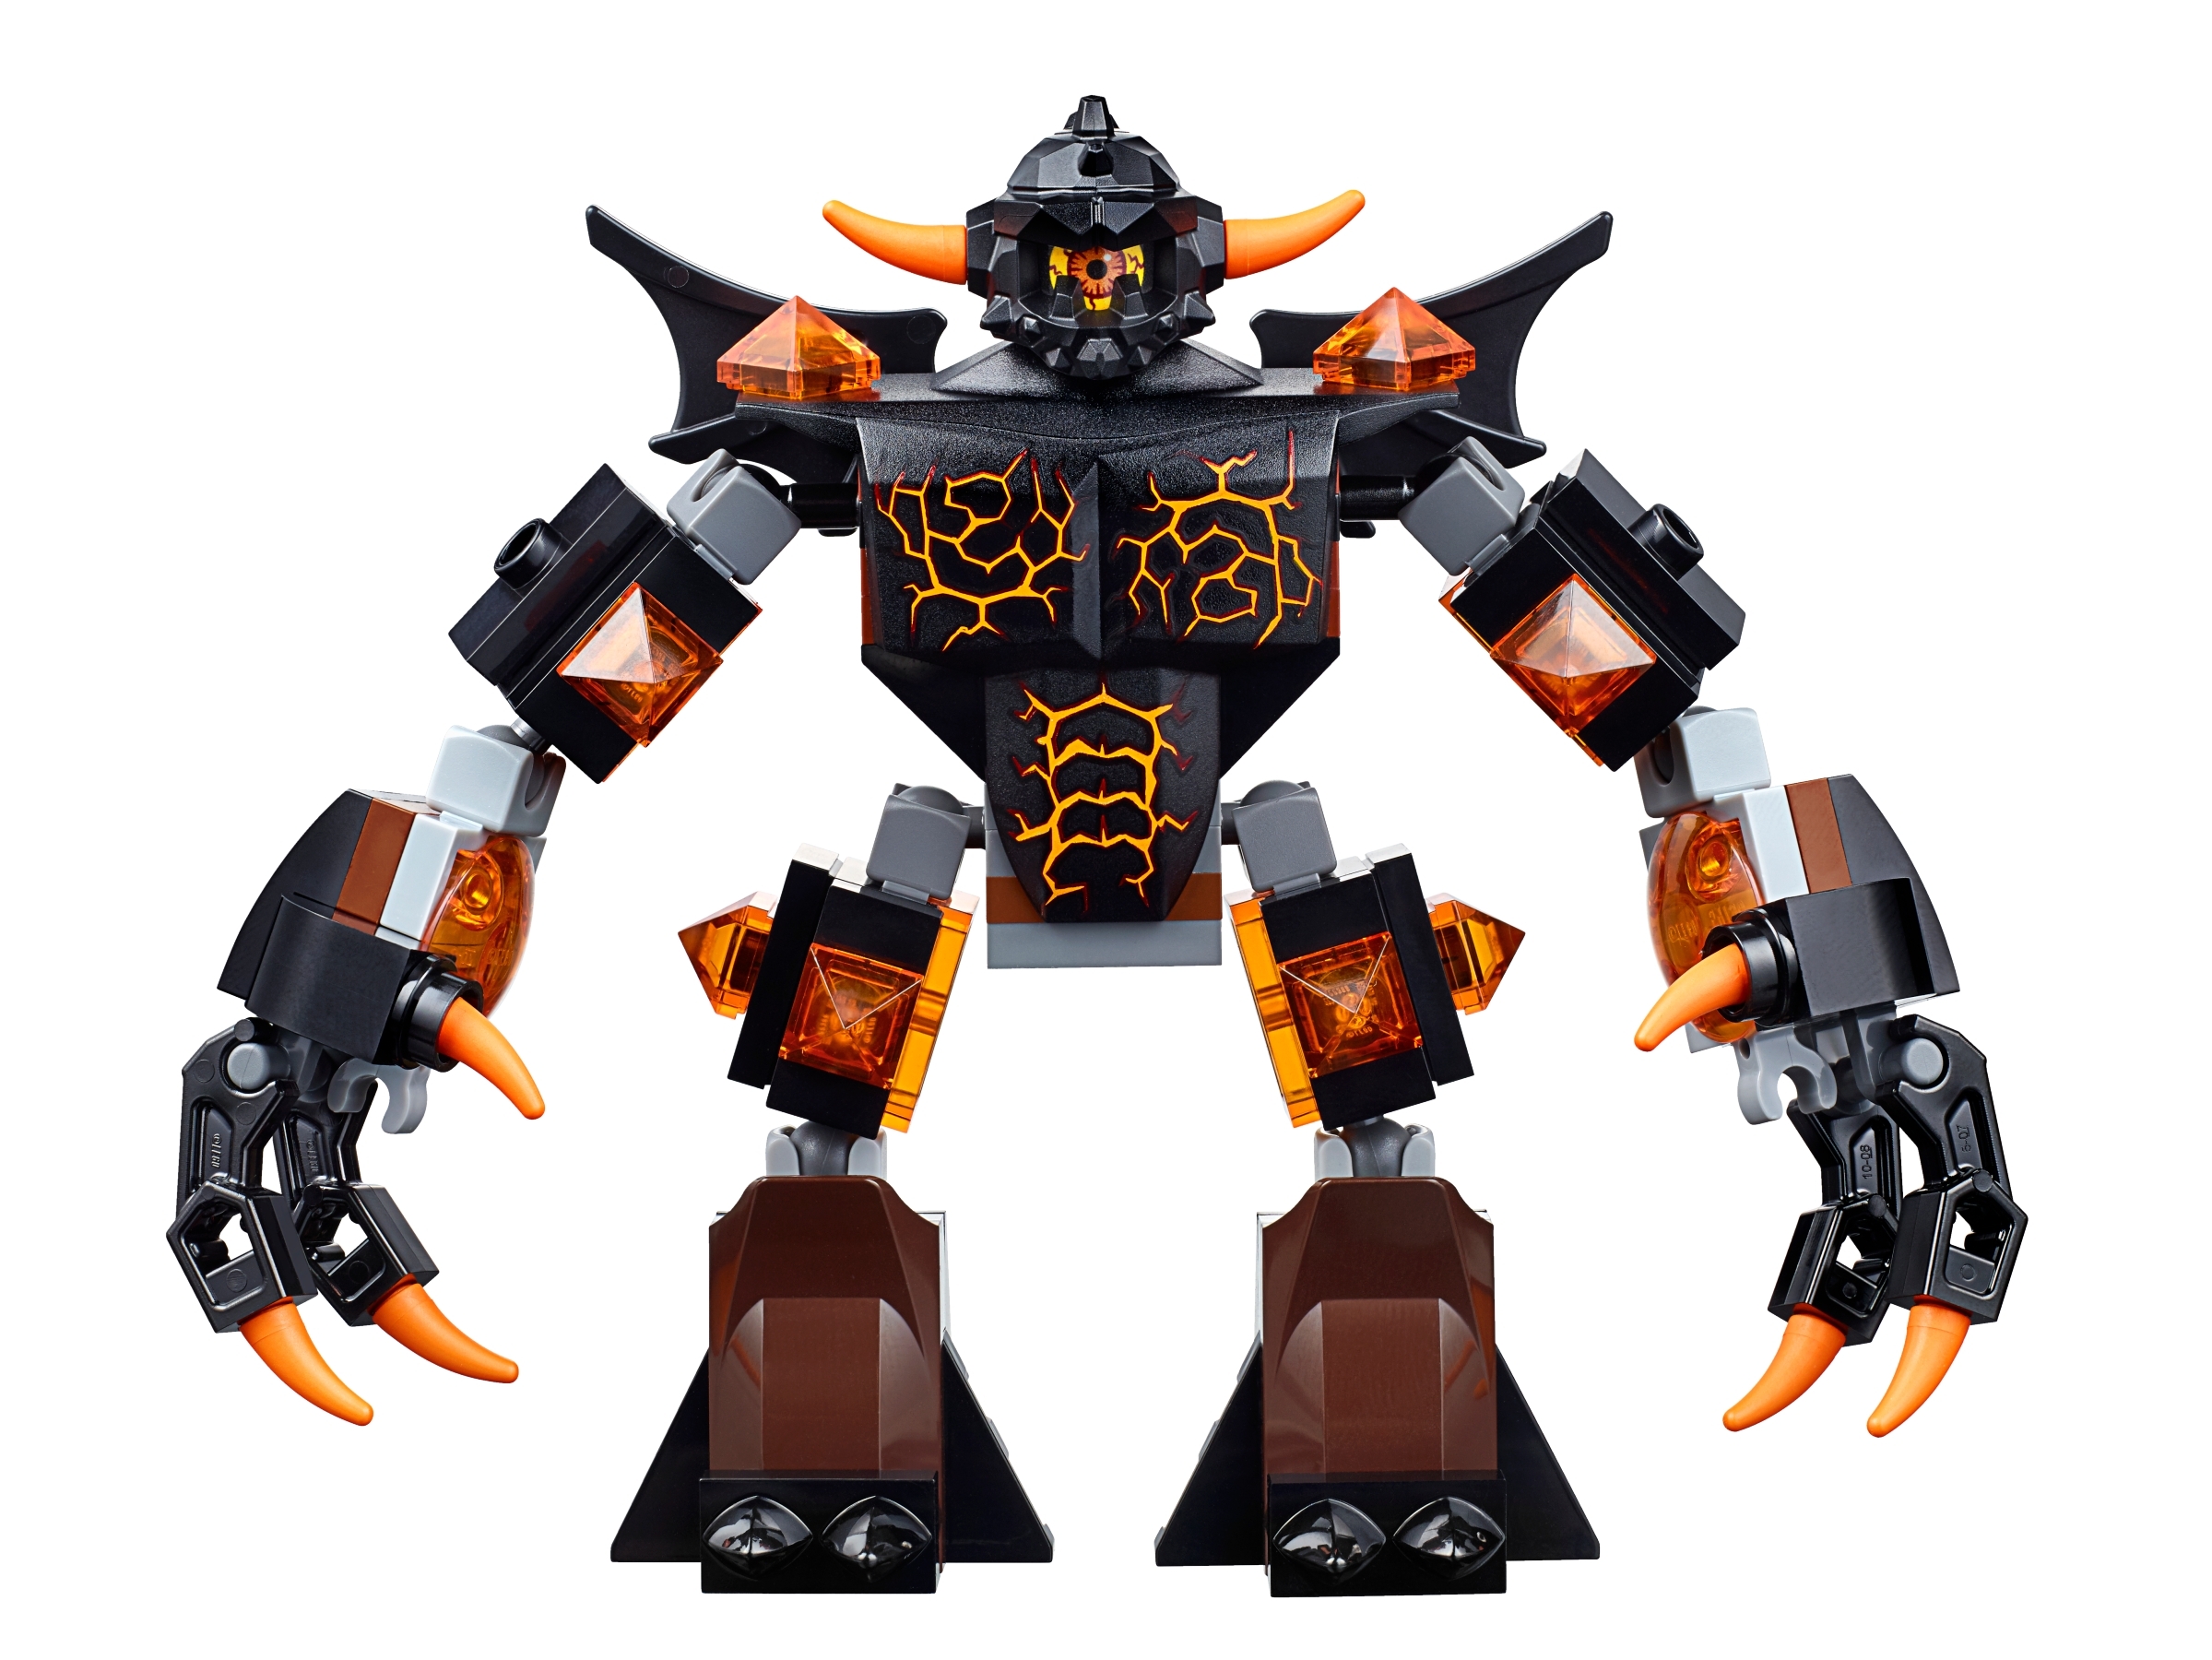 LEGO-Nexo Knights-jestro mini personaggio-CAVALIERE nominerà nex013 70323 70316 